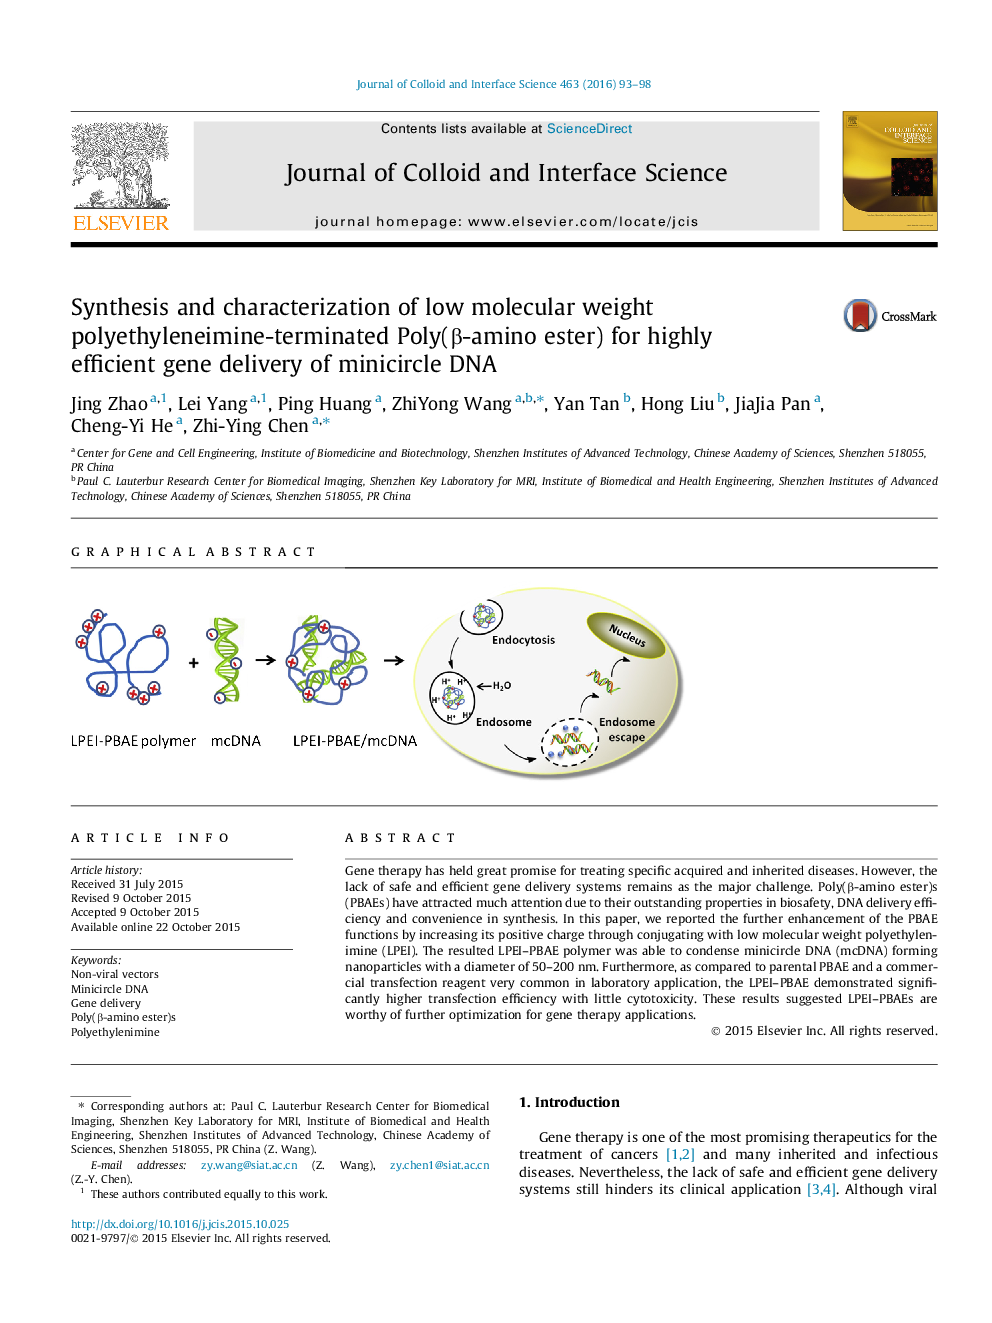 سنتز و شناسایی با وزن مولکولی پایین (استر β-آمینه)، پلیاتیلنایمین خاتمه پلی برای انتقال ژن بسیار کارآمد از DNA minicircle